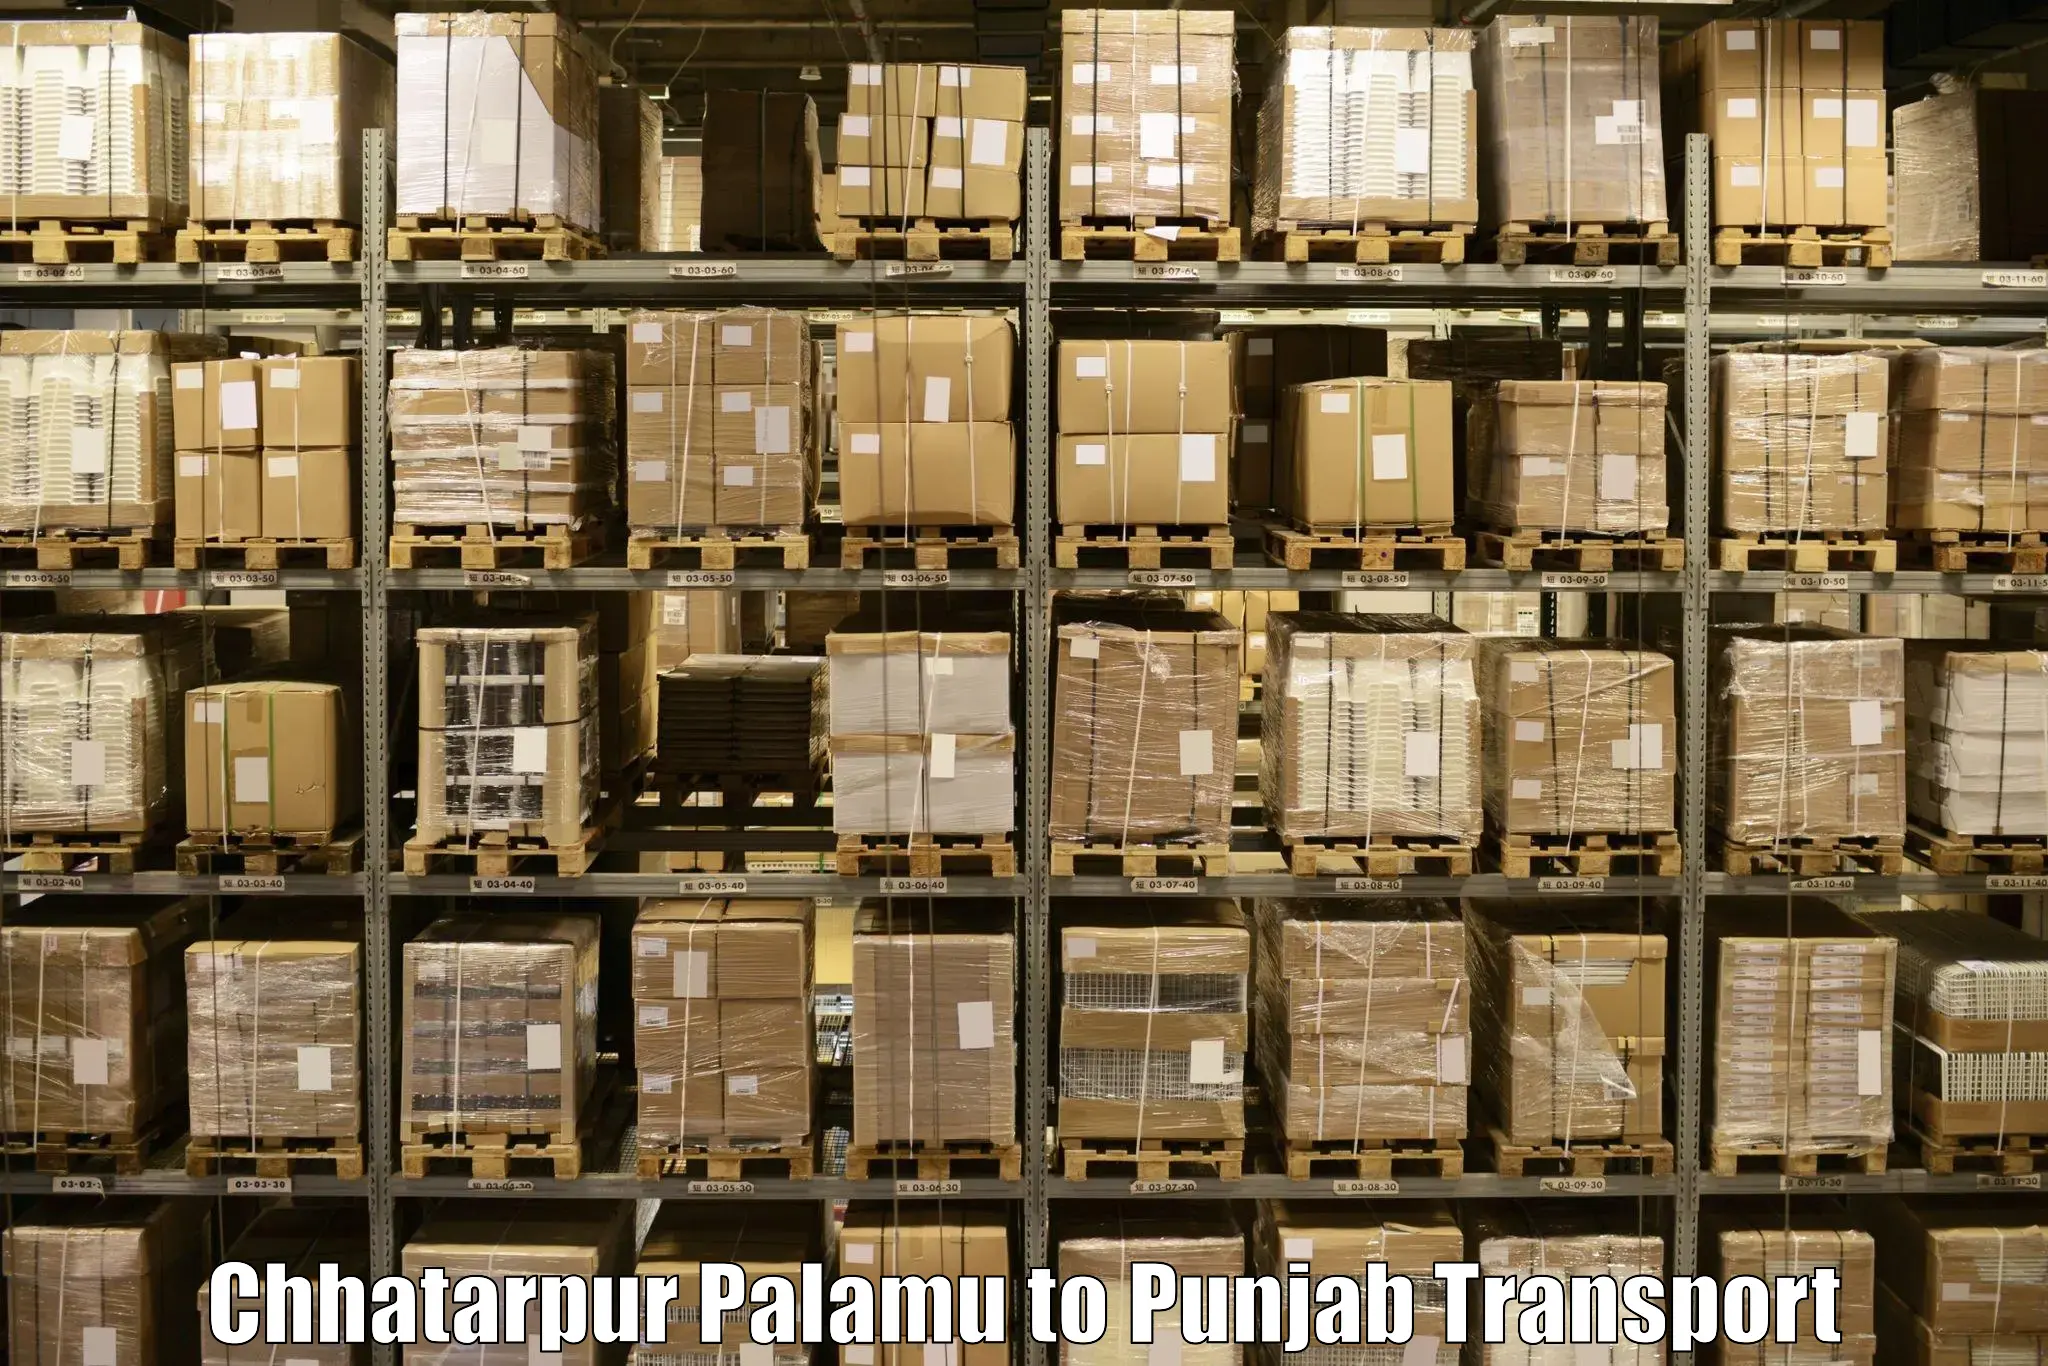 Online transport booking in Chhatarpur Palamu to Jalandhar